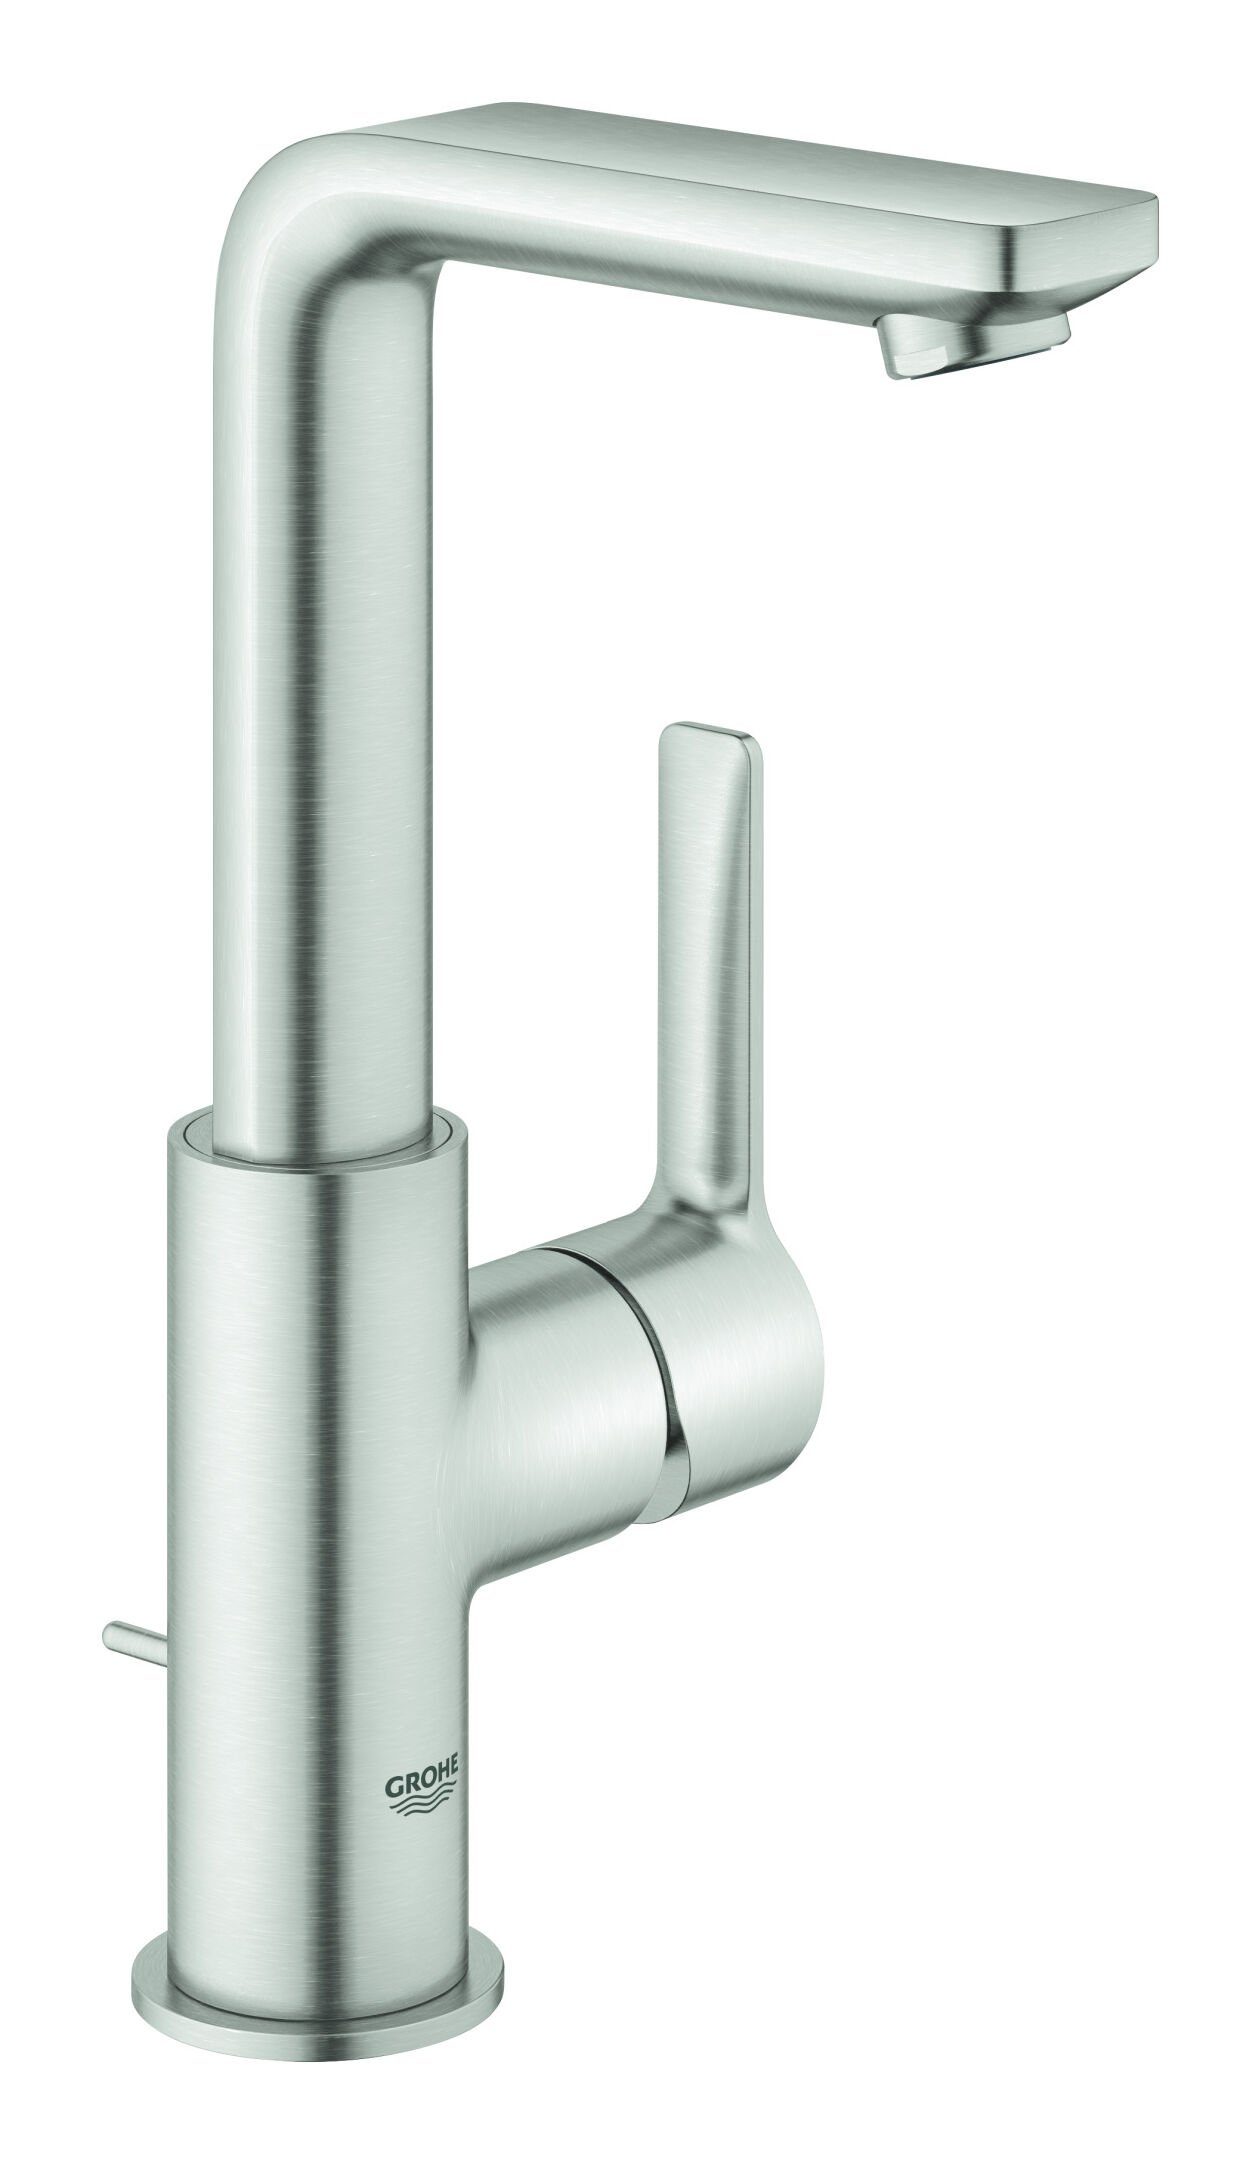 Grohe Waschtischarmatur Lineare Einhand mit Zugstangen-Ablaufgarnitur L-Size - Supersteel